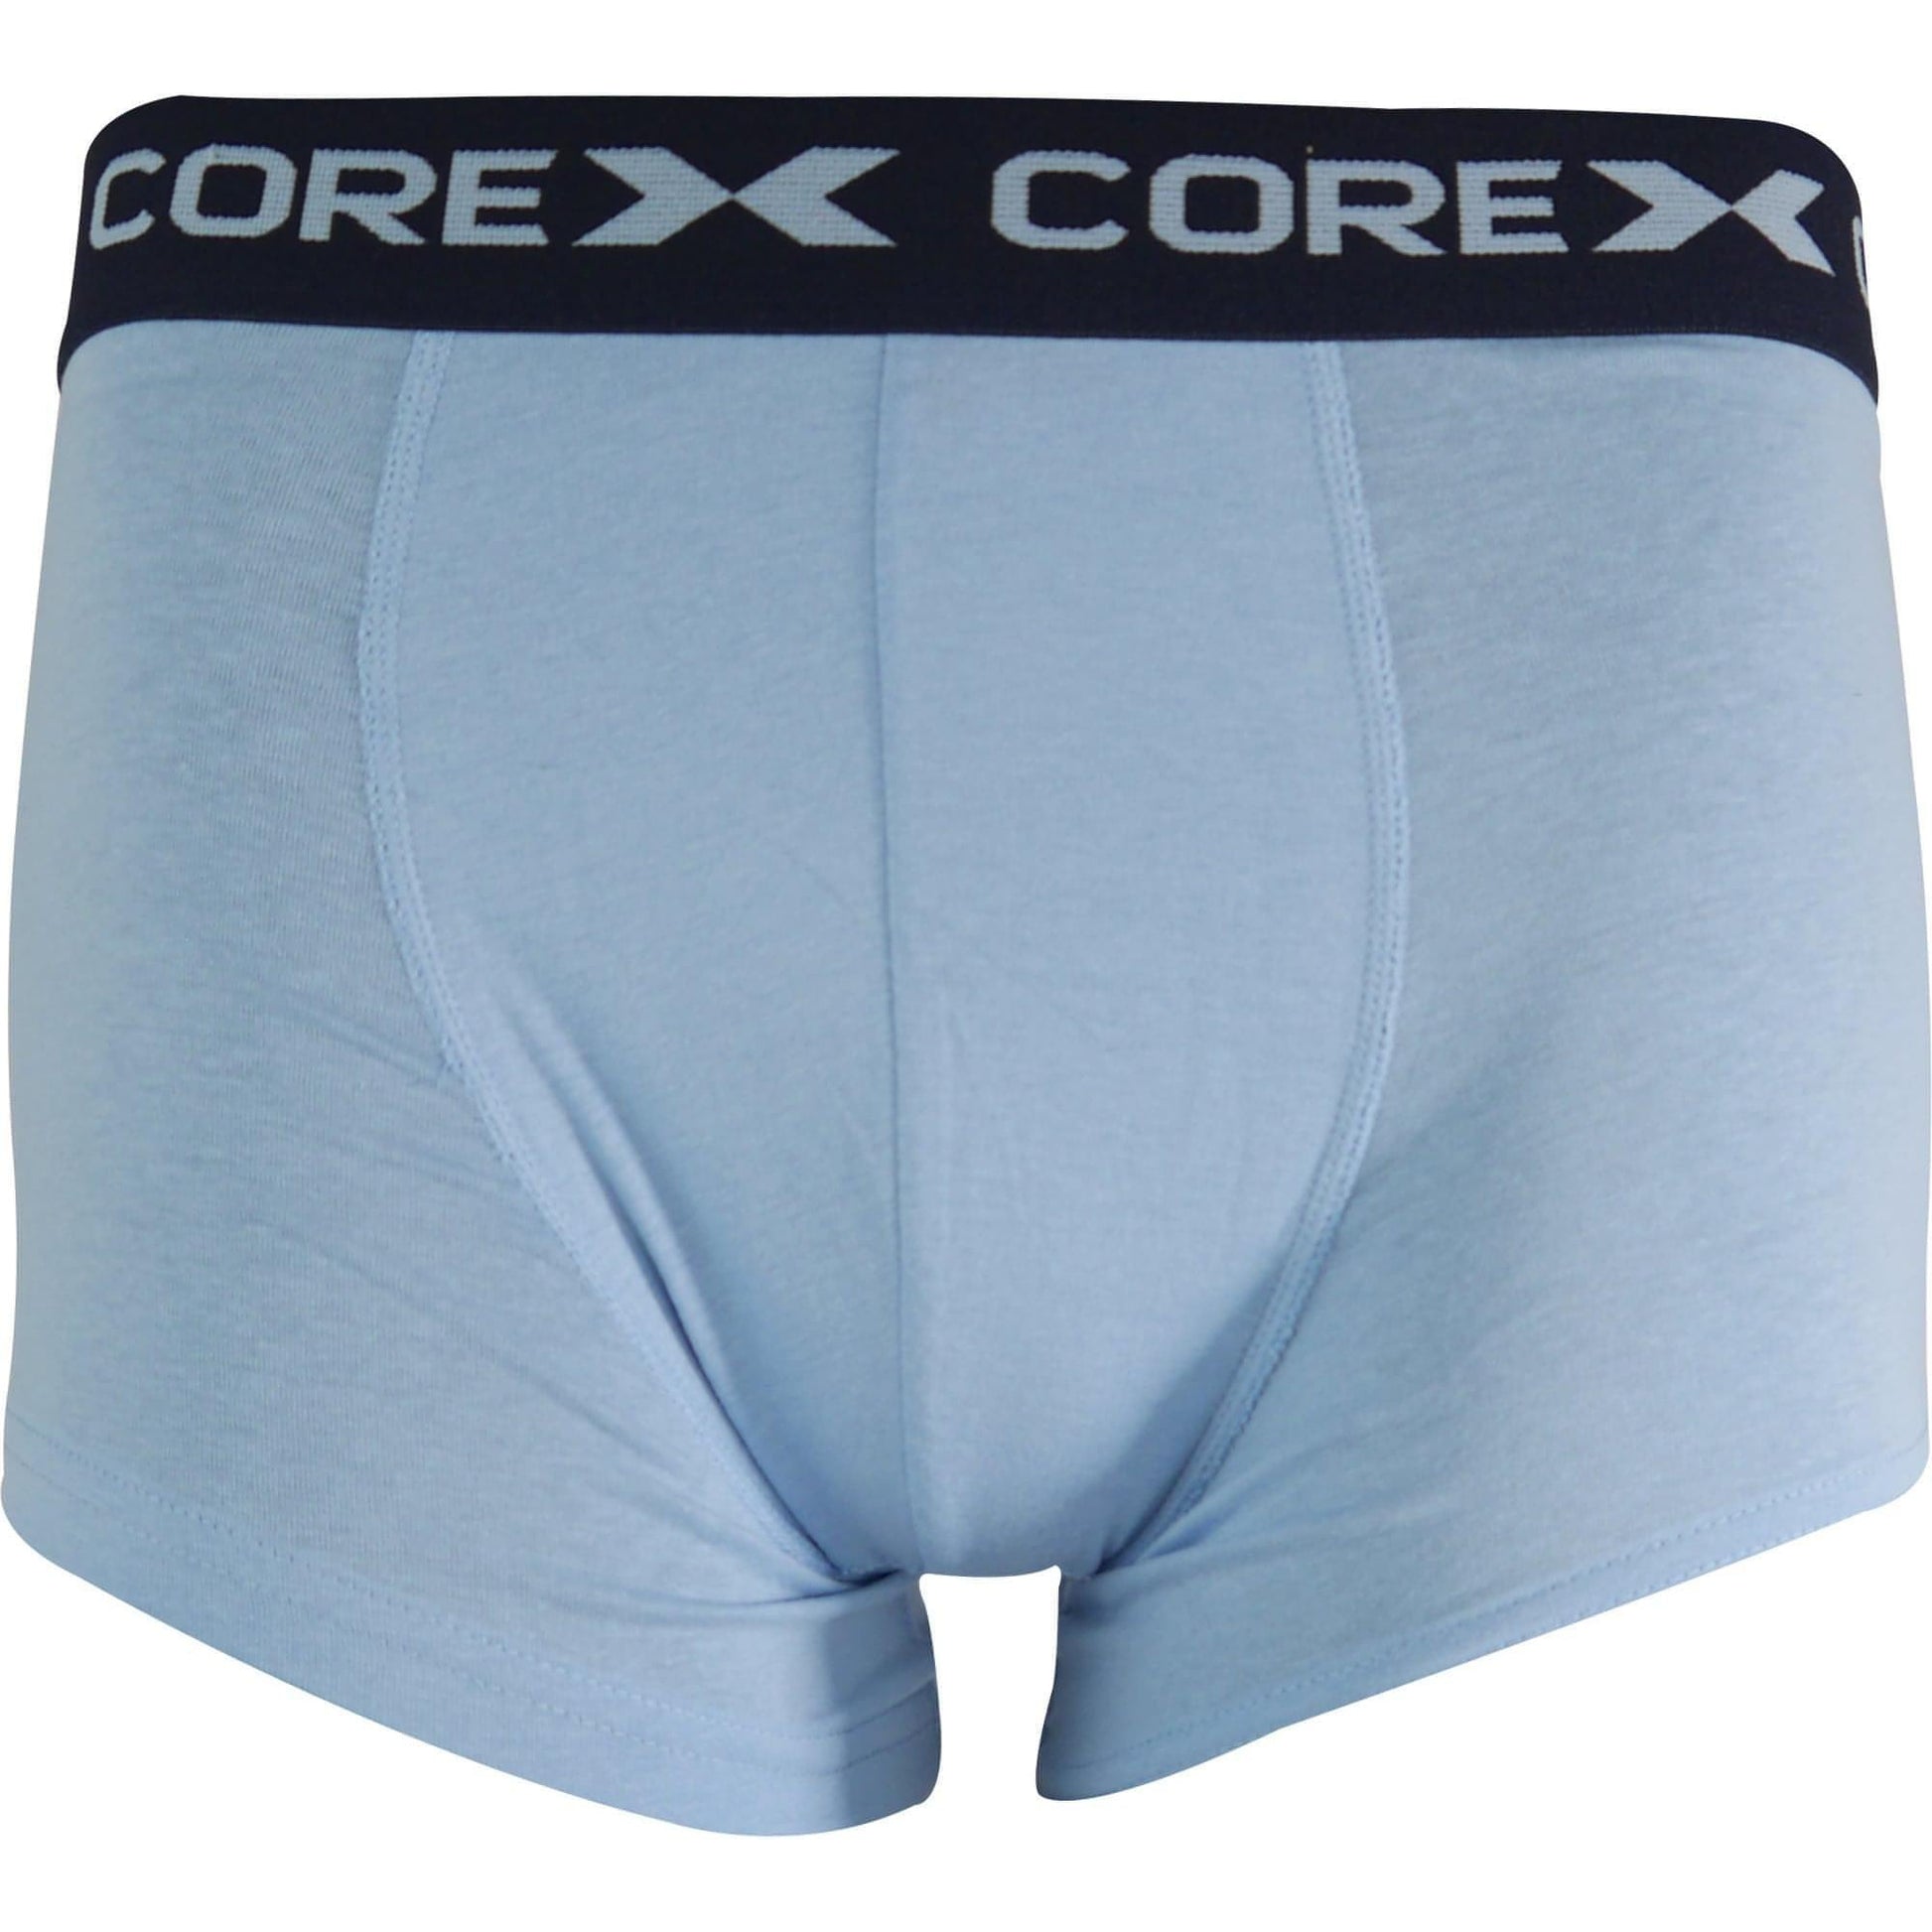 Corex Fitness Classic Pack Boxers 1P204911Wm Bluenavy Blue Front - Front View